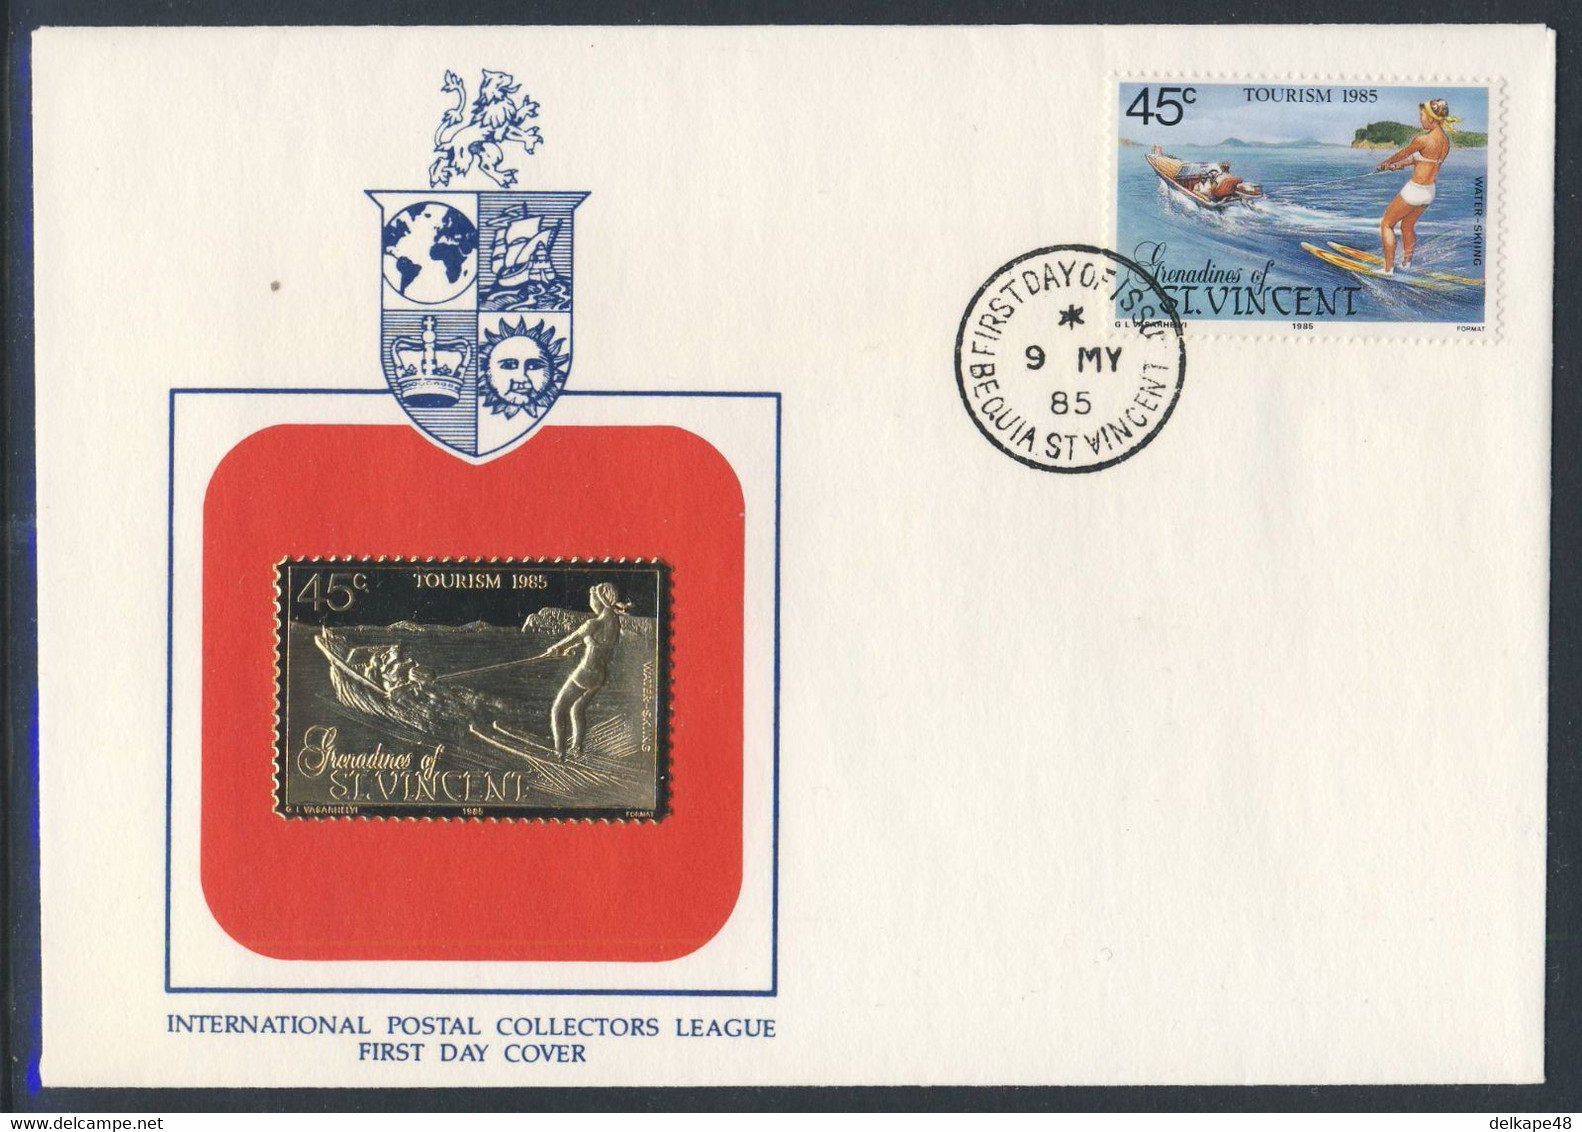 Grenadines Of St. Vincent 1985 FDC Mi 398 SG 387 - Golden Stamp - Water-skiing / Wasserskifahren / - Ski Nautique